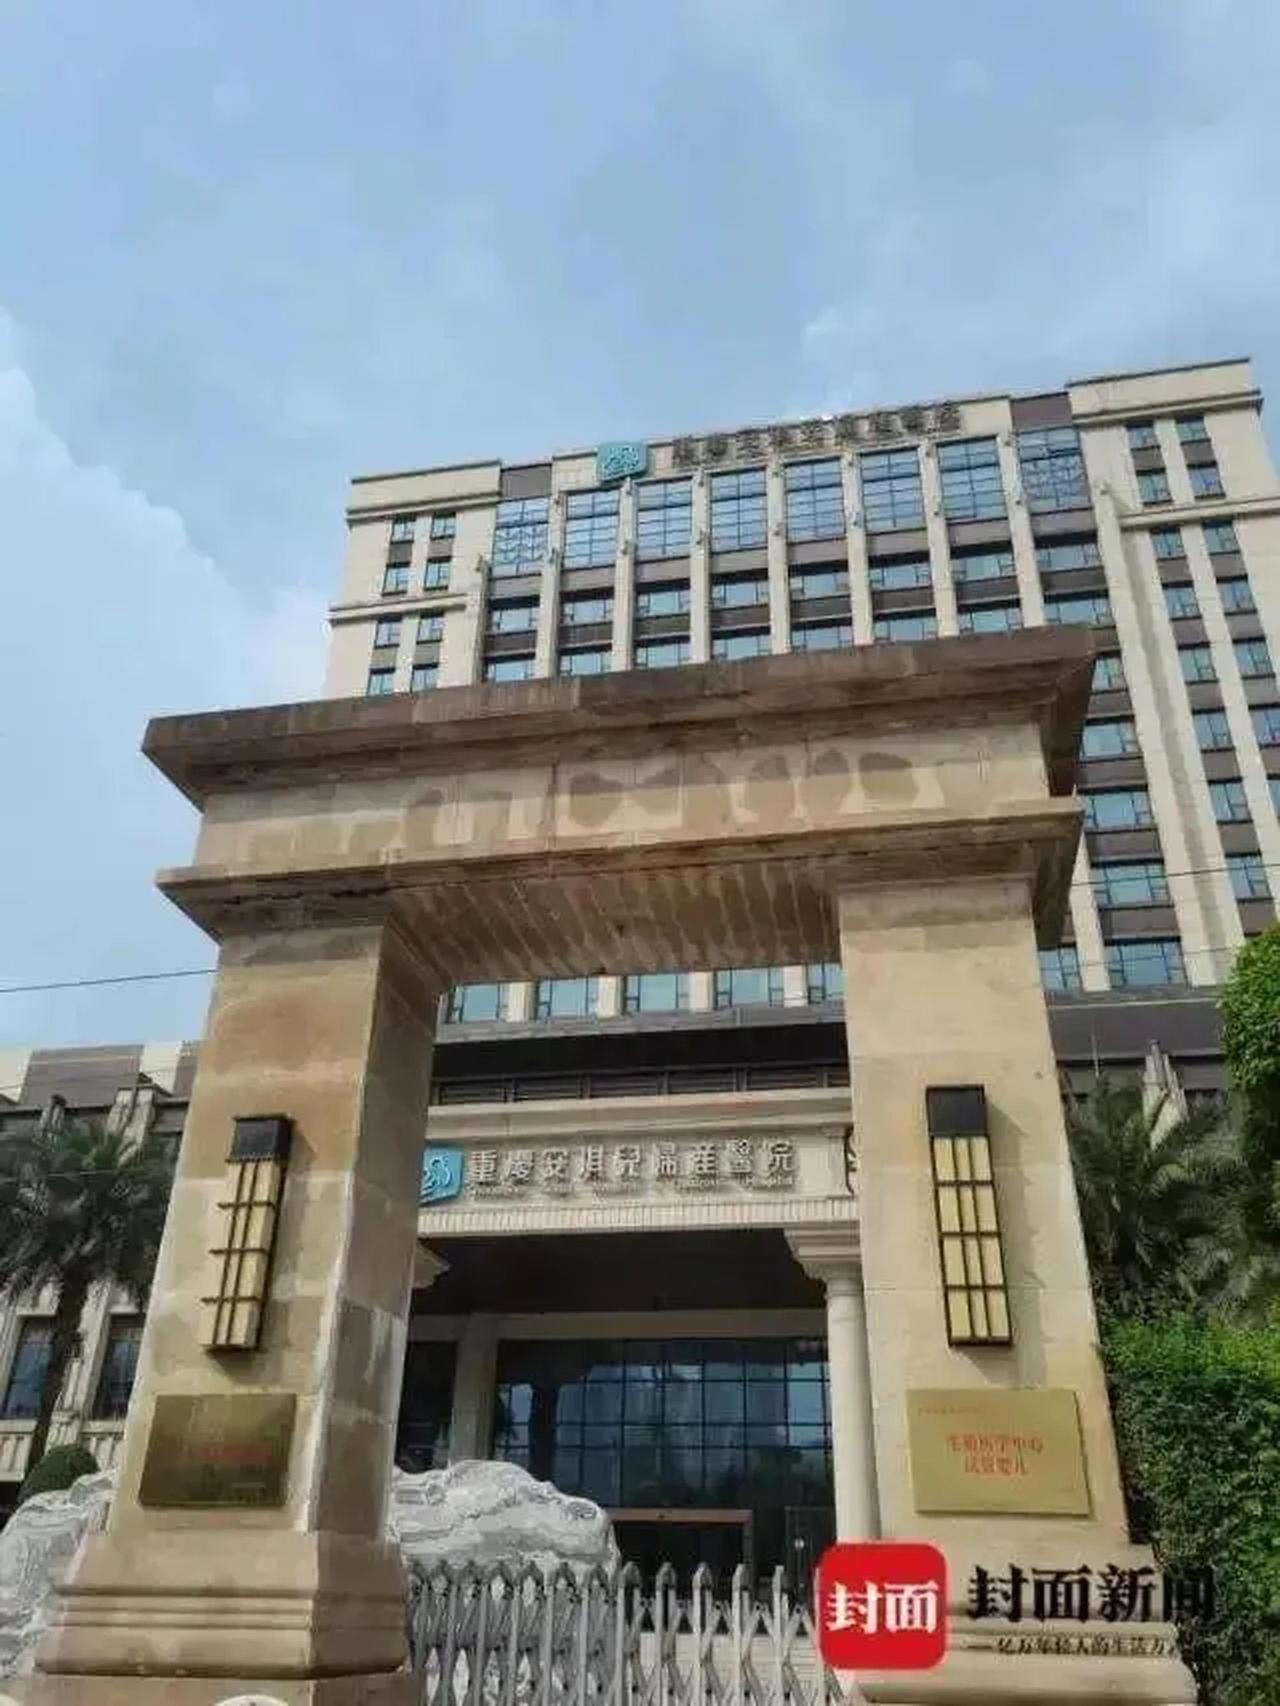 重庆市安琪儿妇产医院被举报多人冒名产子。(取材自封面新闻)